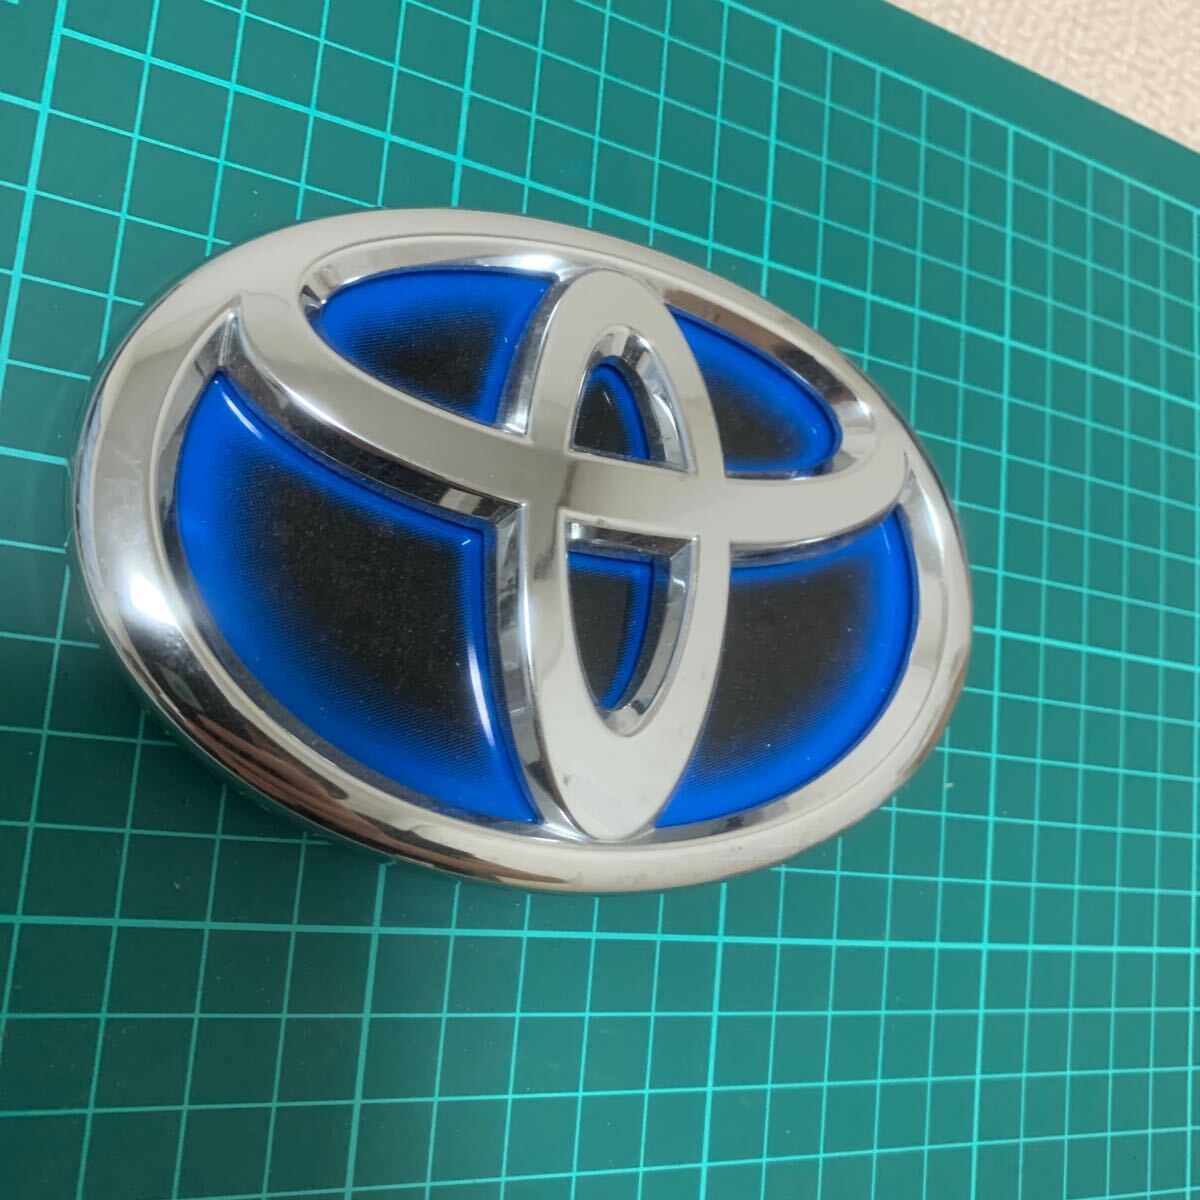  Toyota emblem hybrid plating 